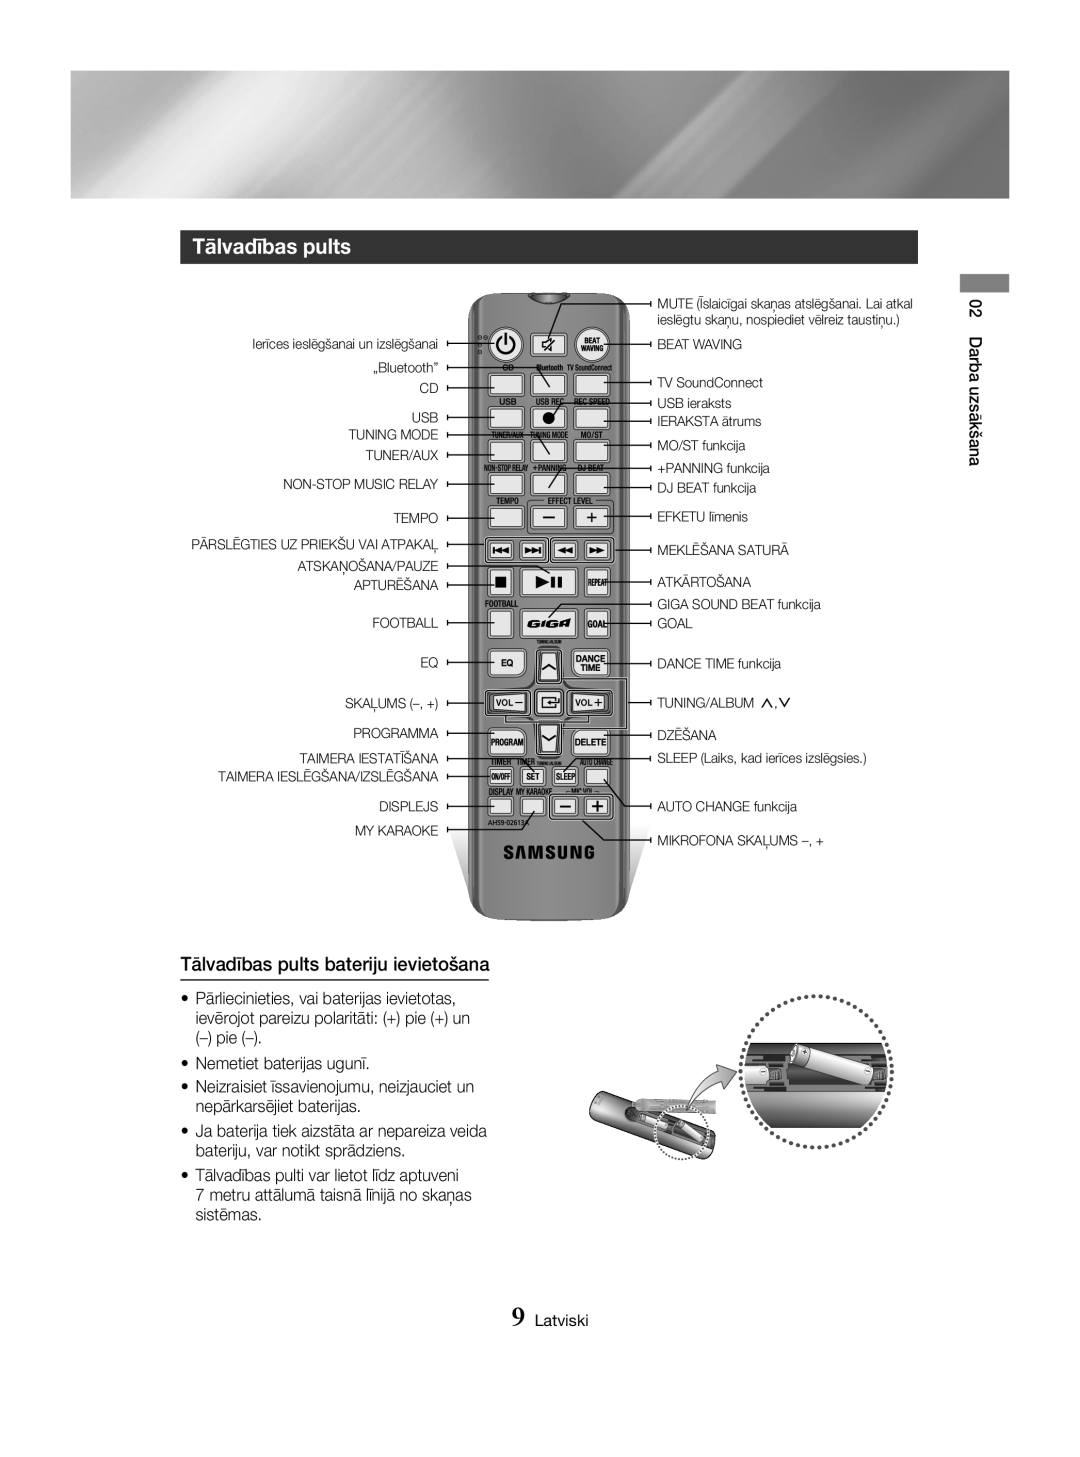 Samsung MX-HS8000/EN manual Tālvadības pults bateriju ievietošana, Darba uzsākšana, Latviski 